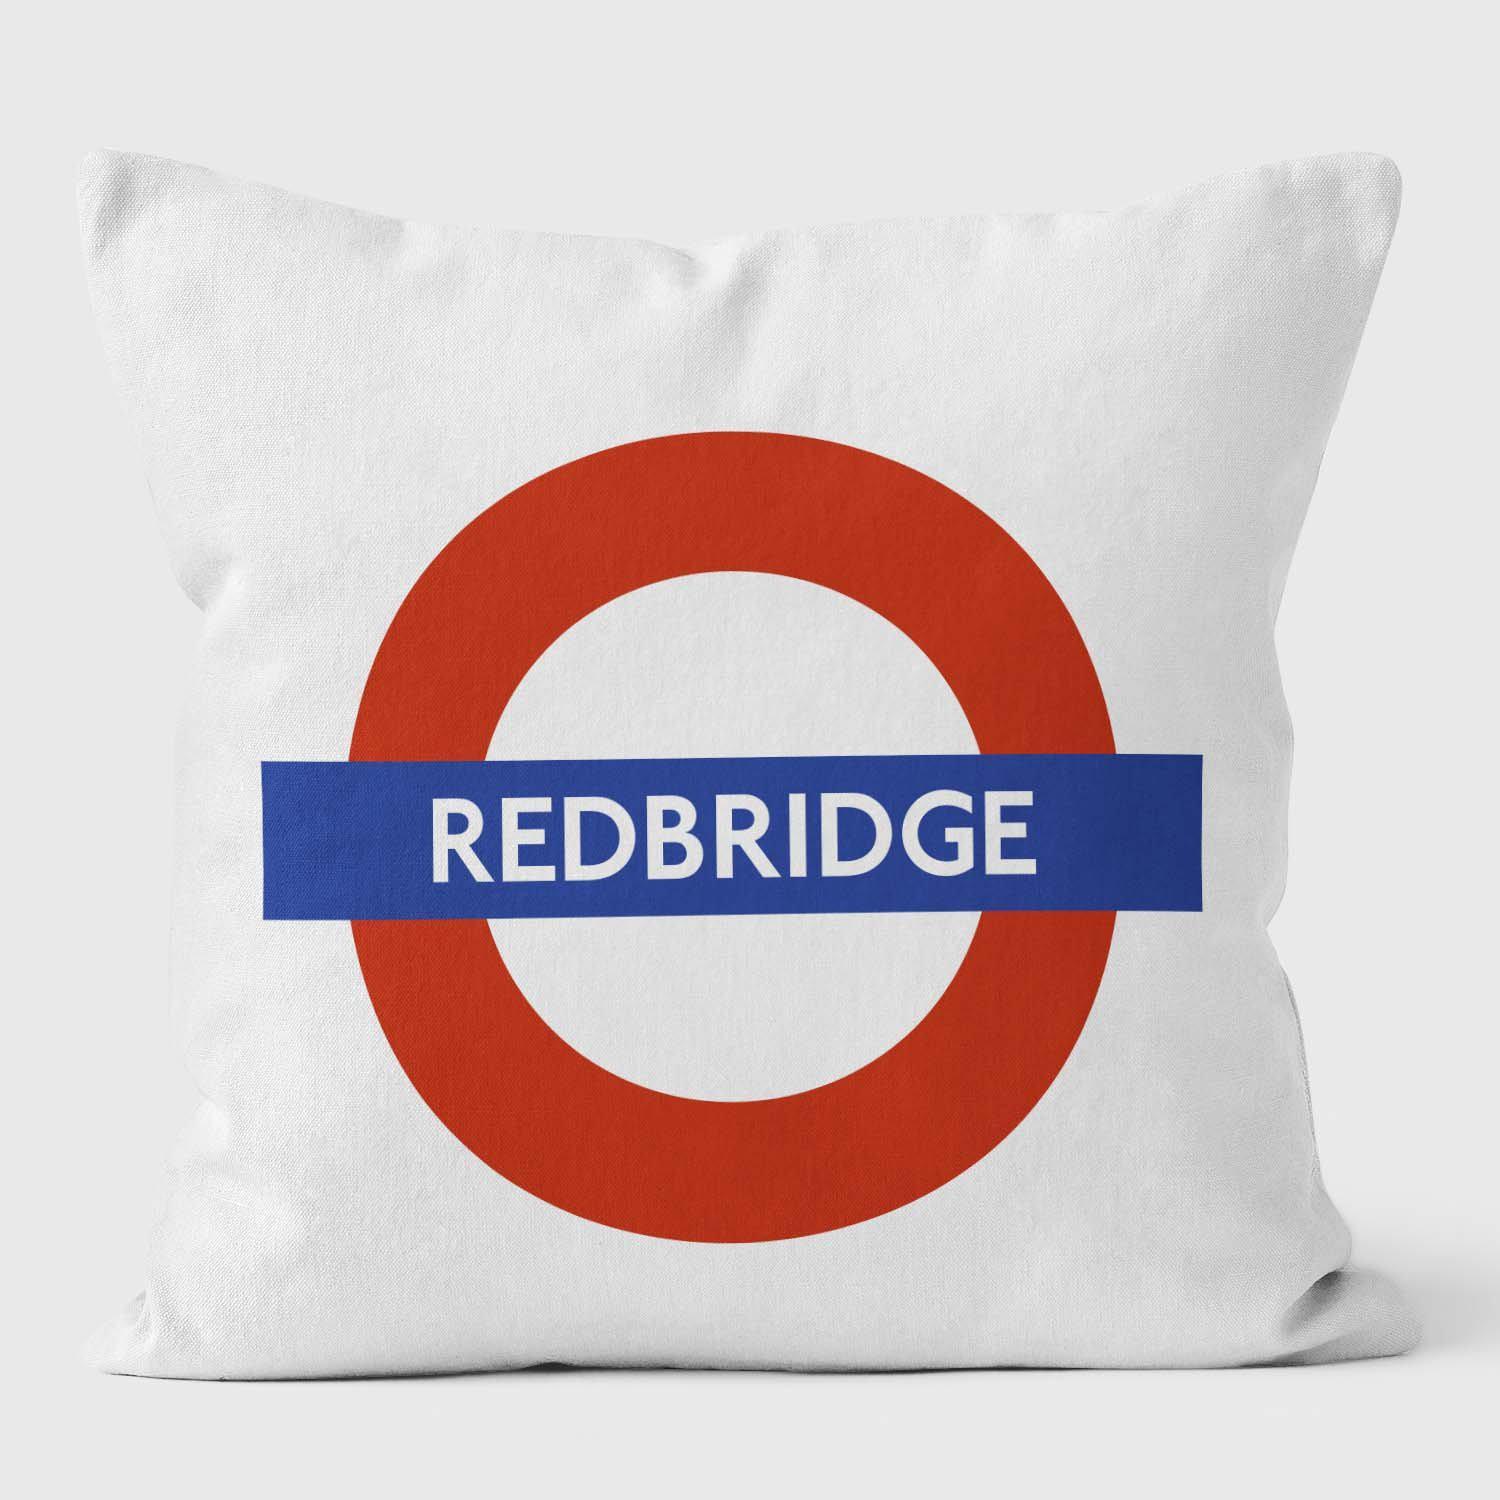 Redbridge London Underground Tube Station Roundel Cushion - Handmade Cushions UK - WeLoveCushions